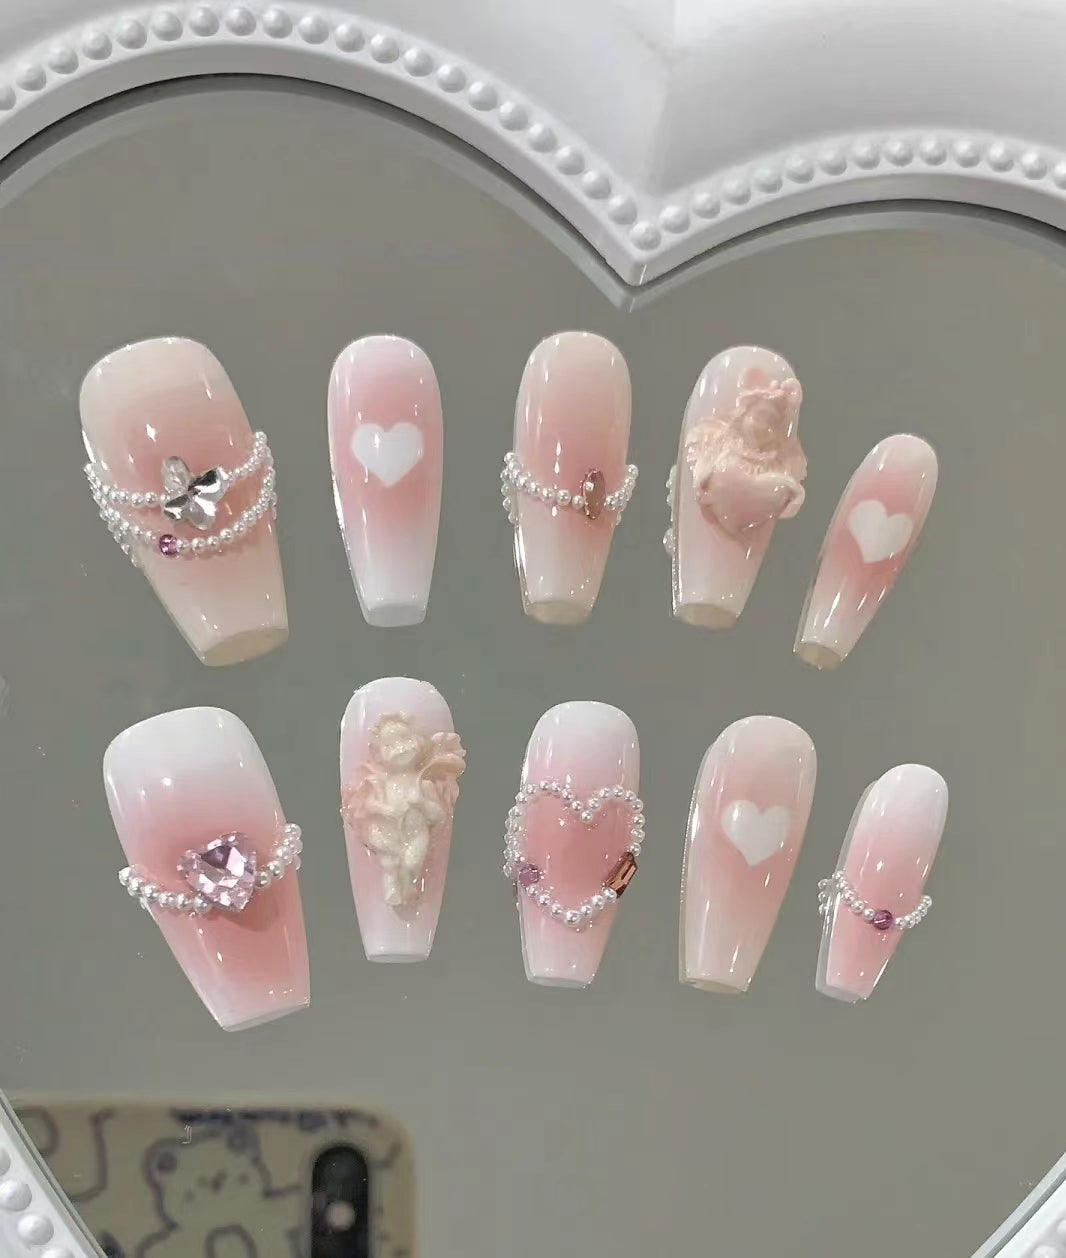 Customizing beautiful nails